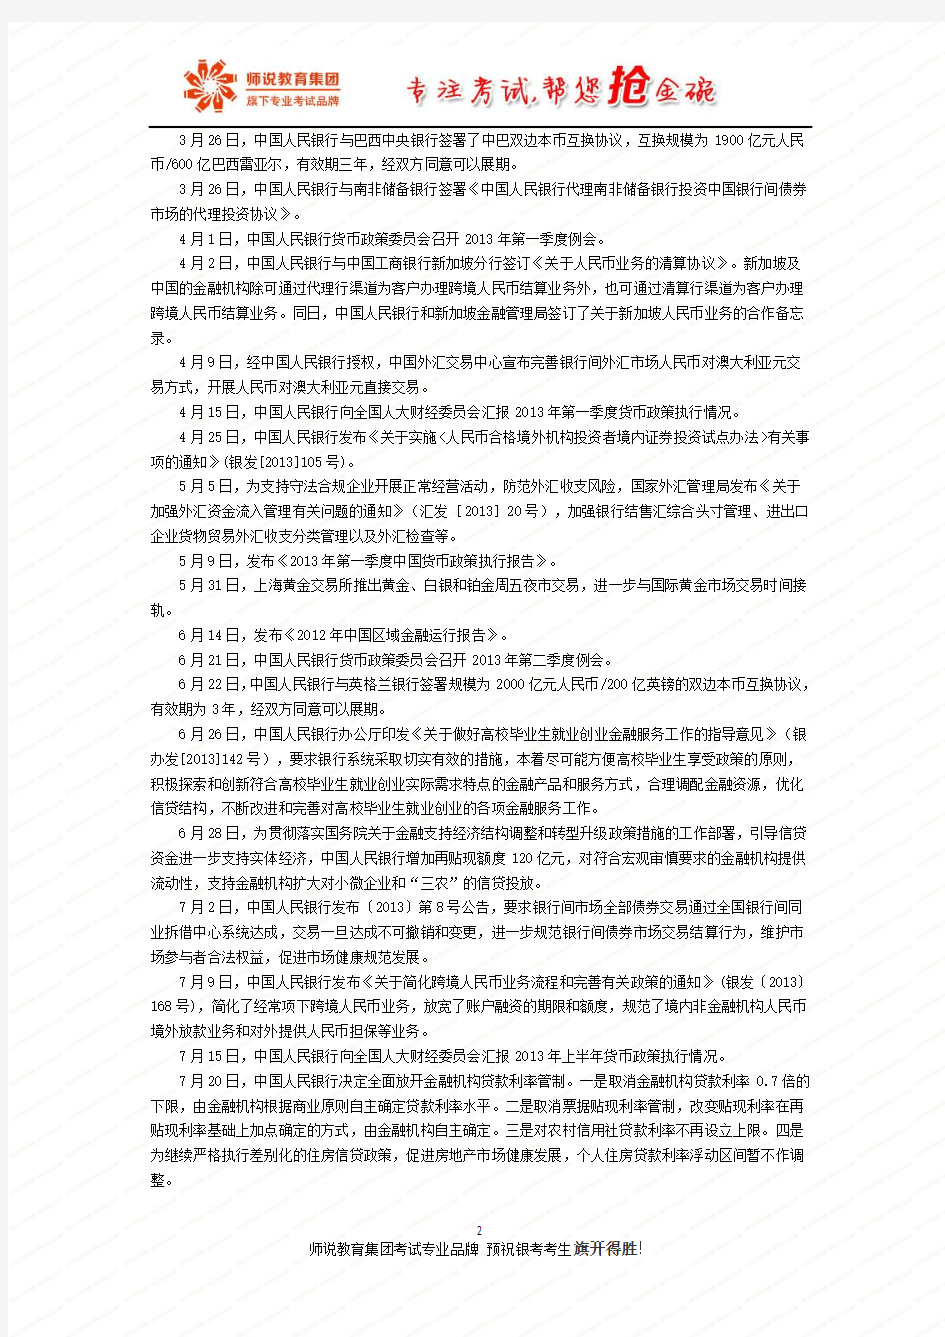 11.人民银行货币大事记(二)